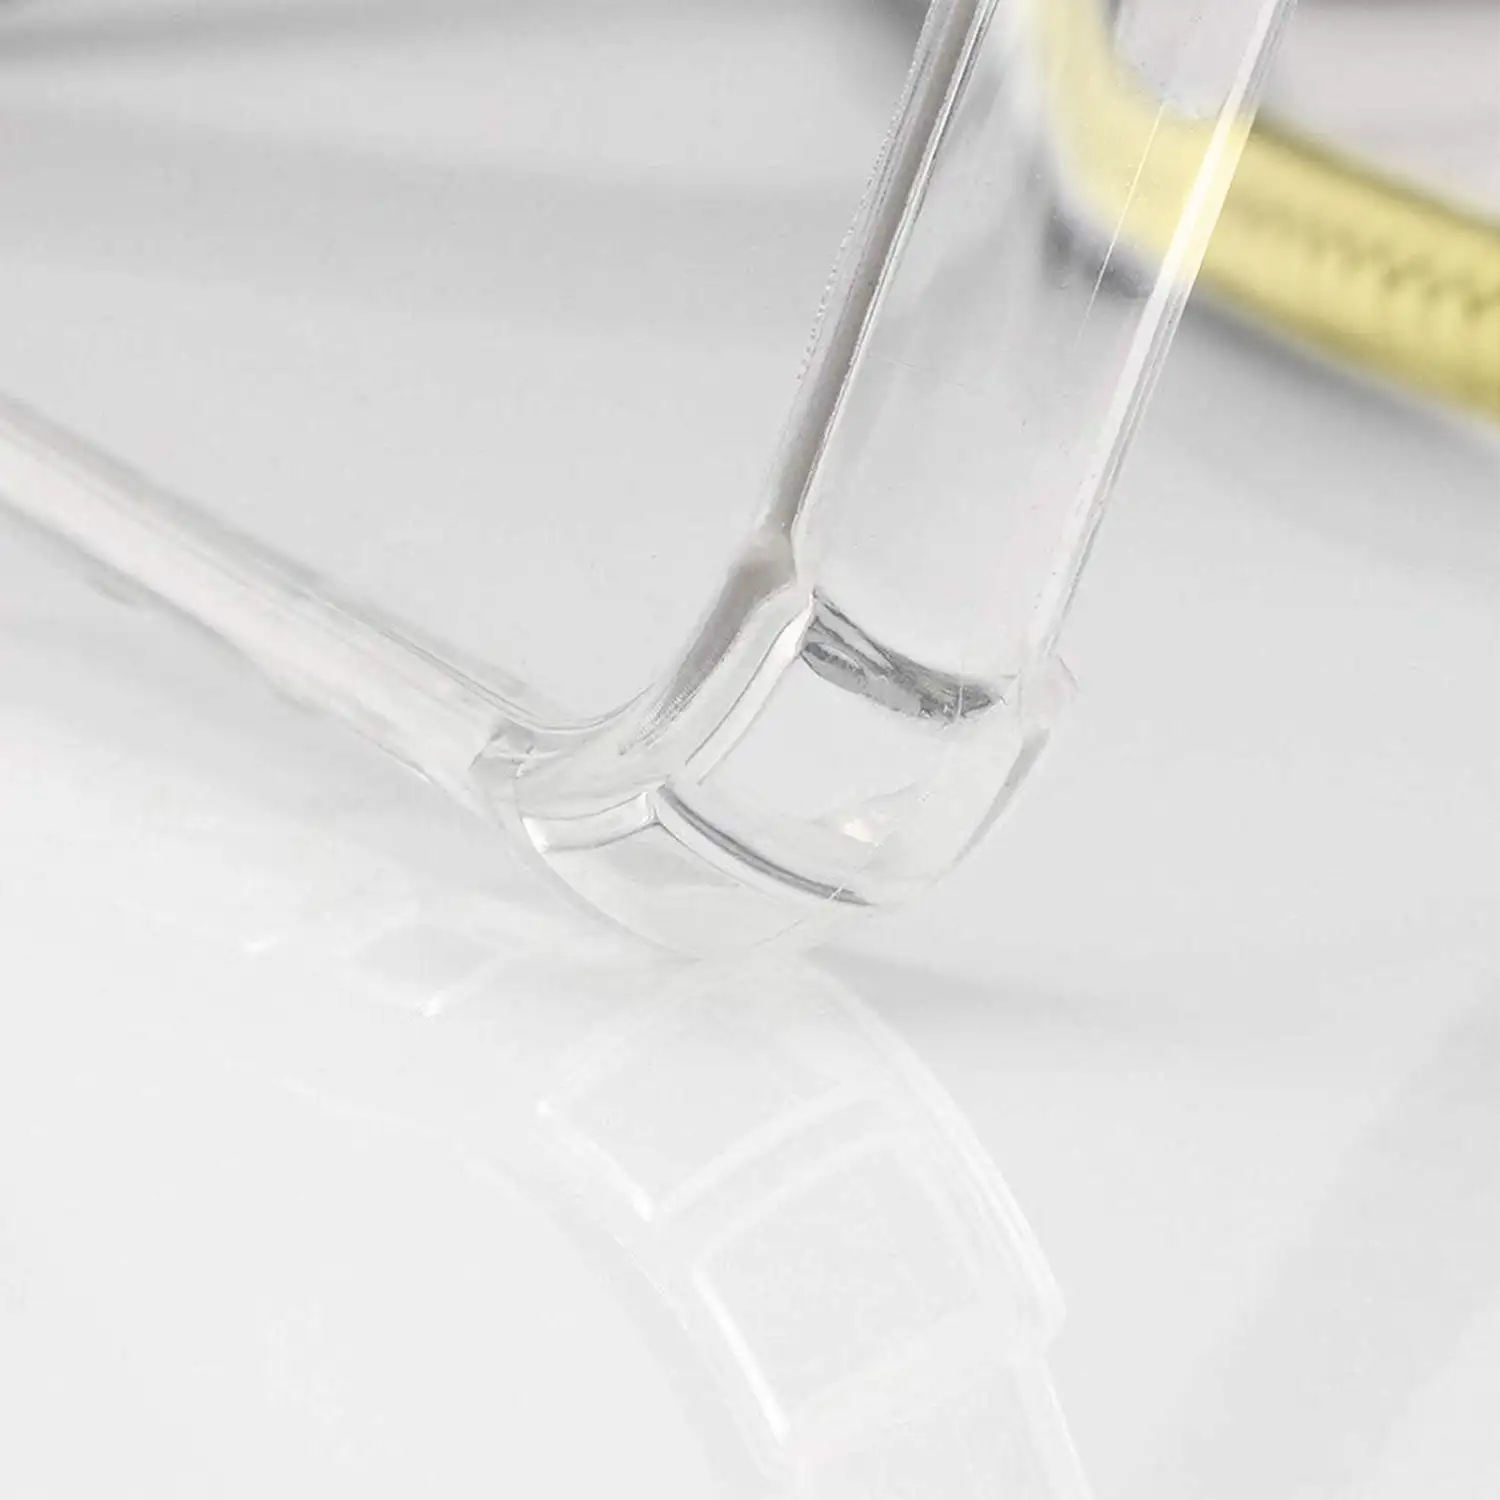 Carcasa transparente iPhone X con colgante de nylon. Accesorio de moda, ajuste perfecto y máxima protección